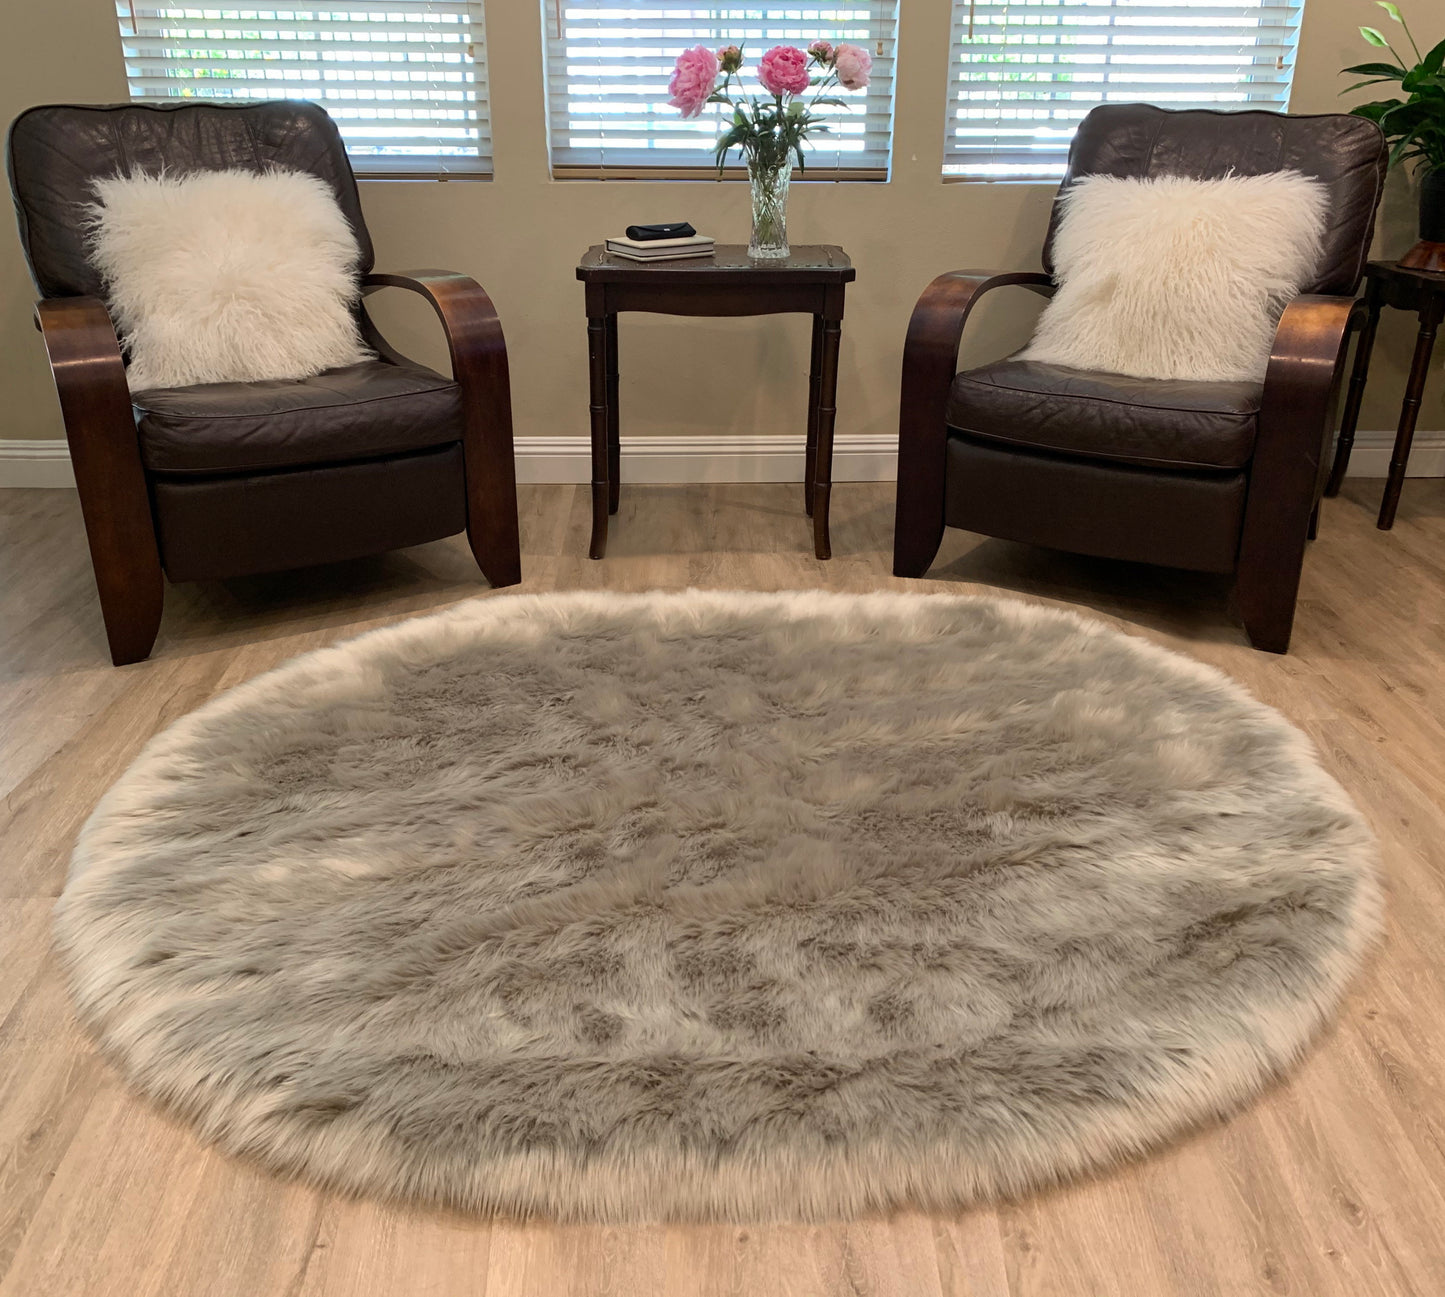 Faux sheepskin rug Oval Shaped 4'X6' (120cm x 180cm)